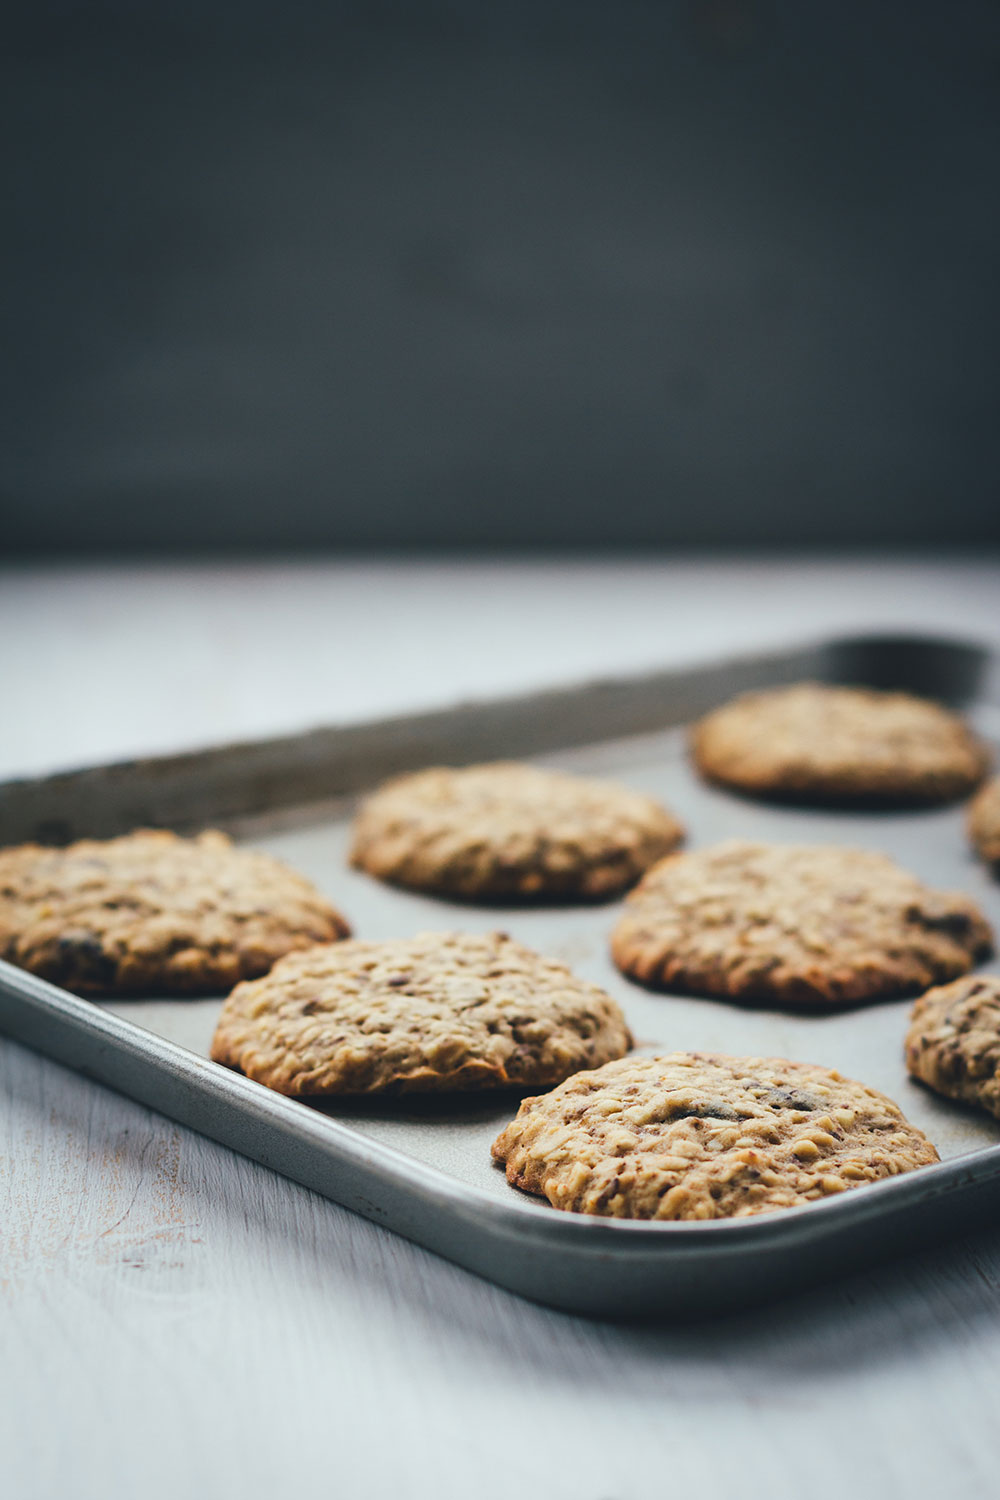 Rezept für Granola-Cookies | Mein Müsli der Woche | chewy Müsli-Kekse mit Cranberries zum Mitnehmen für den Snack zwischendurch | moeyskitchen.com #granola #müsli #knuspermüsli #muesli #cookies #selbstgemacht #homemade #kekse #backen #foodblogger #rezepte #frühstück #snacks #breakfast #cranberries